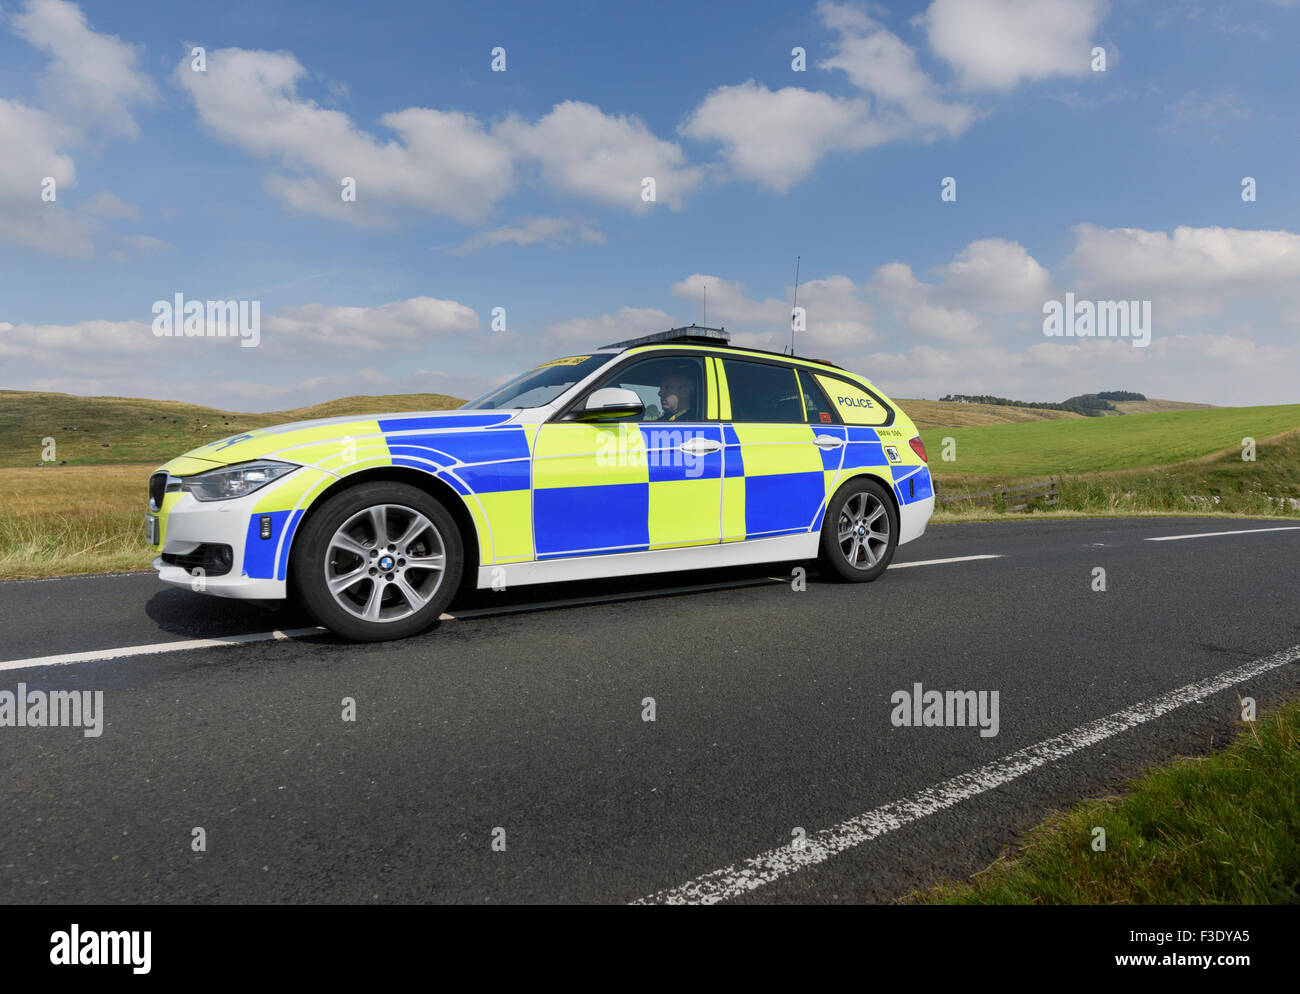 Polizia Patrol Auto in azione - polizia auto accelerare on una strada di campagna Foto Stock